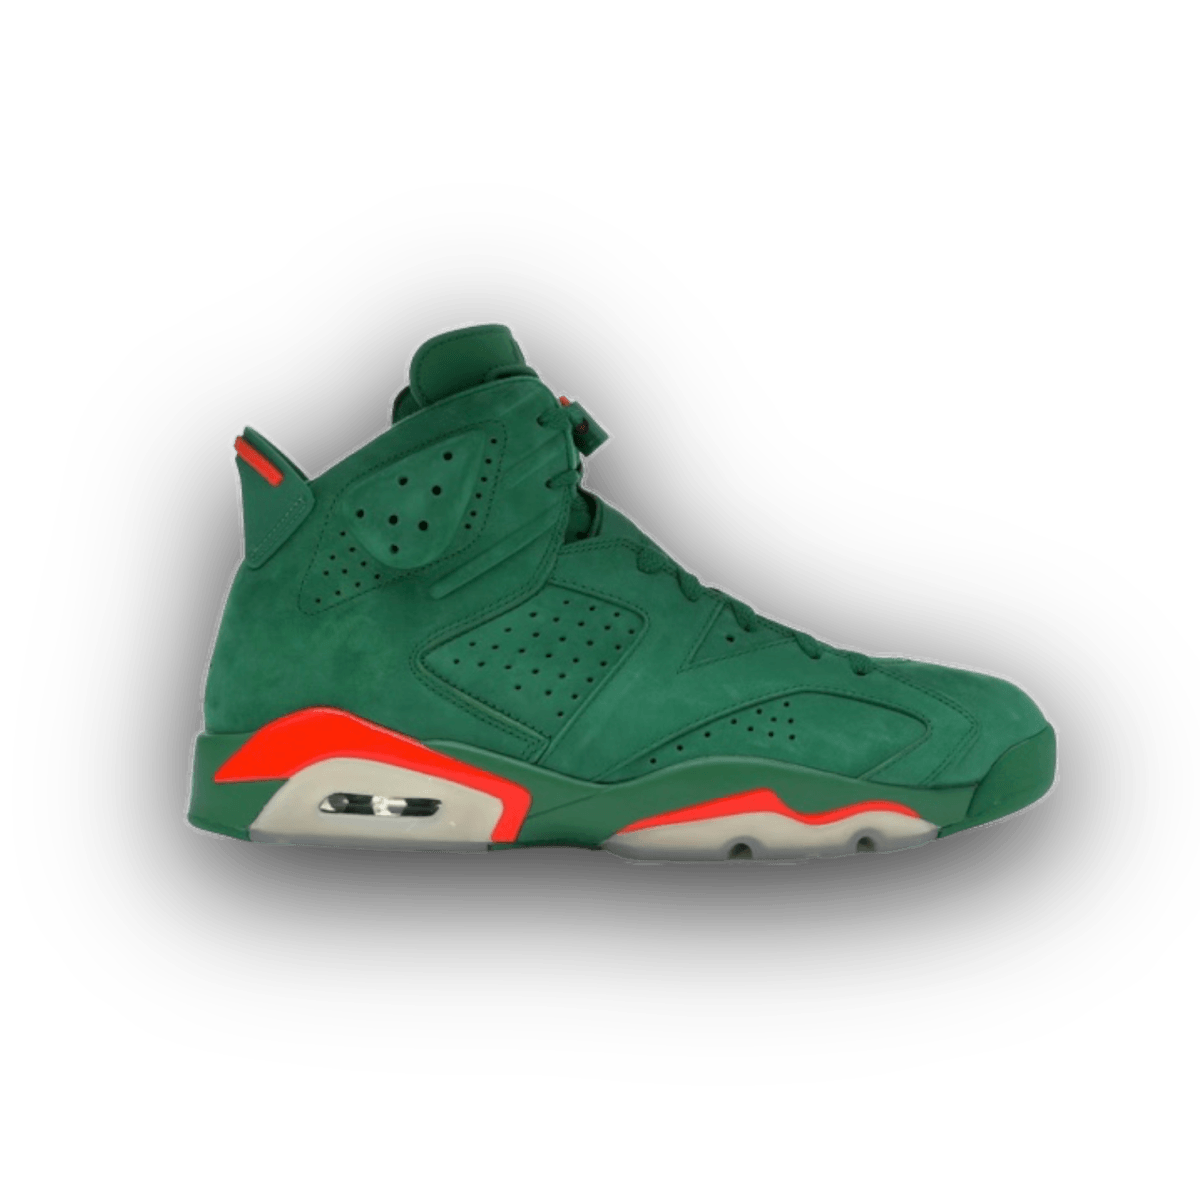 Jordan 6 Retro Gatorade Green - High Sneaker - Jawns on Fire Sneakers & Streetwear